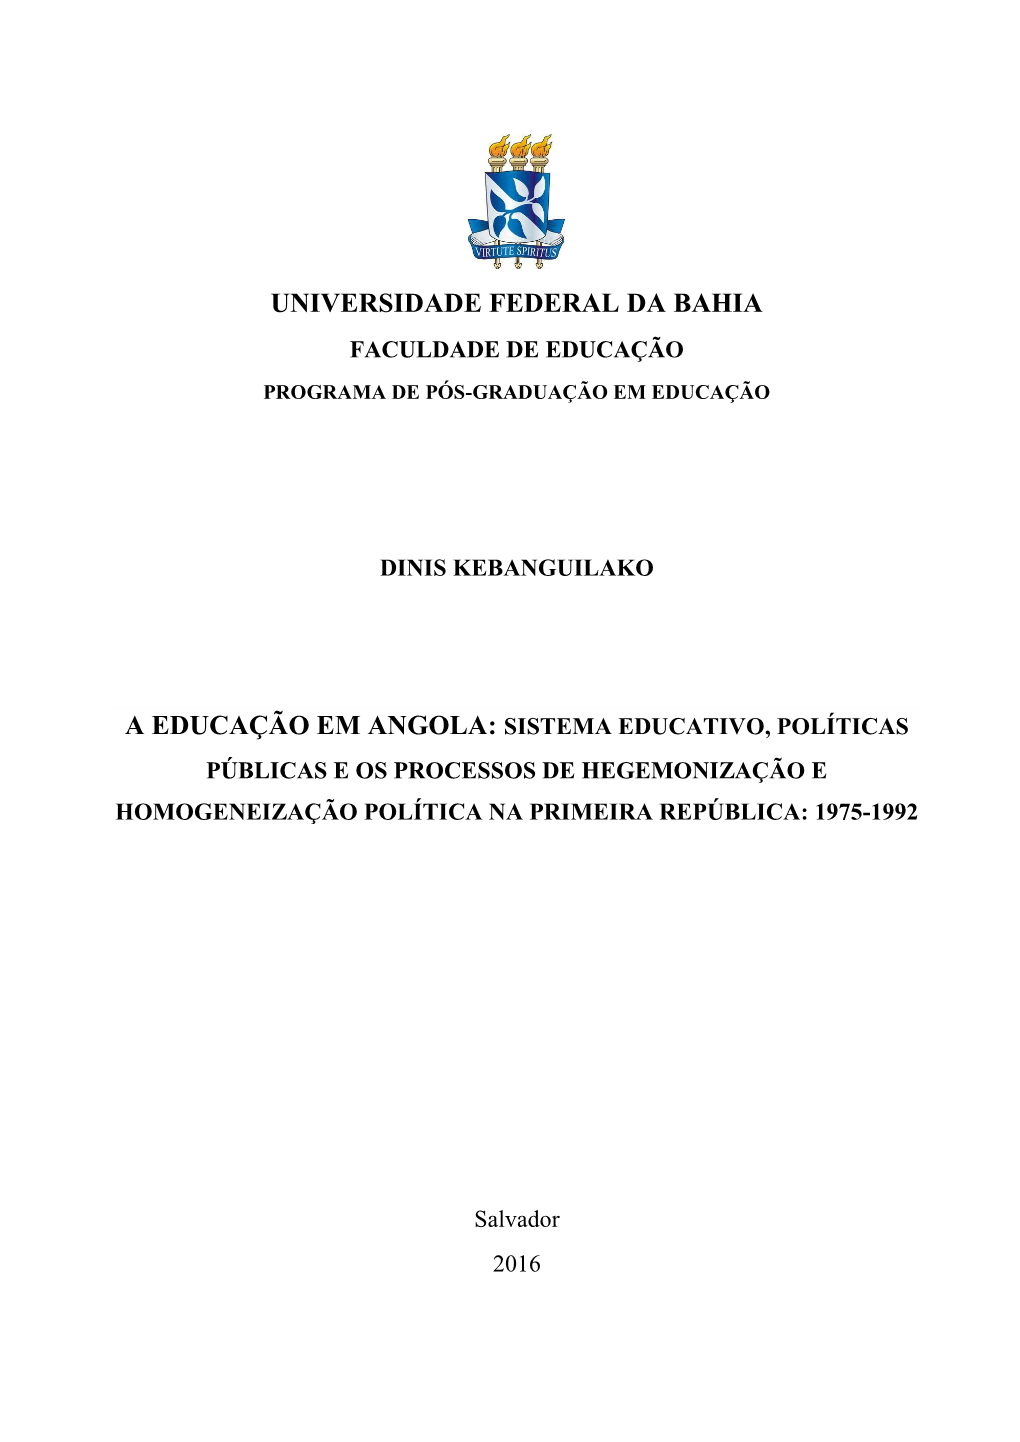 A Educação Em Angola: Sistema Educativo, Políticas Públicas E Os Processos De Hegemonização E Homogeneização Política Na Primeira República: 1975-1992